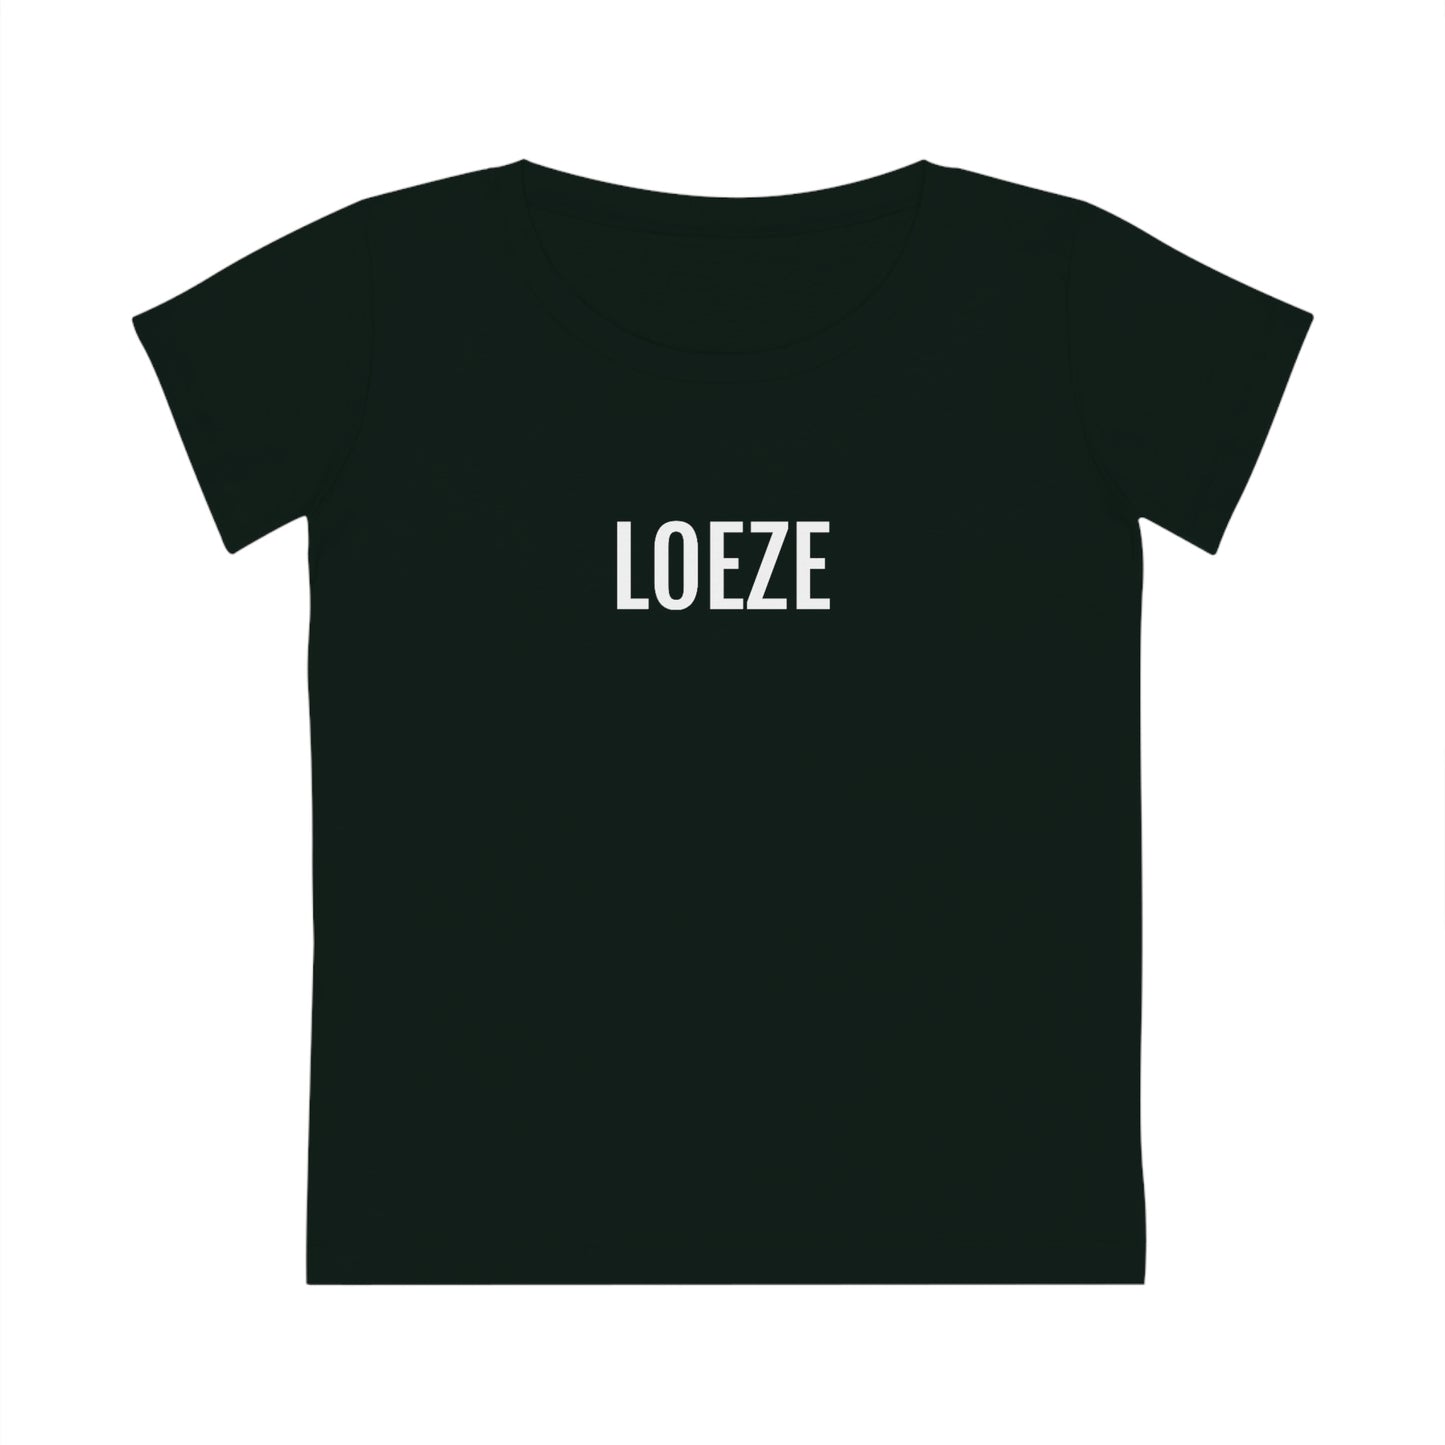 Zwarte T-shirt uit antwerpen met LOEZE opschrift